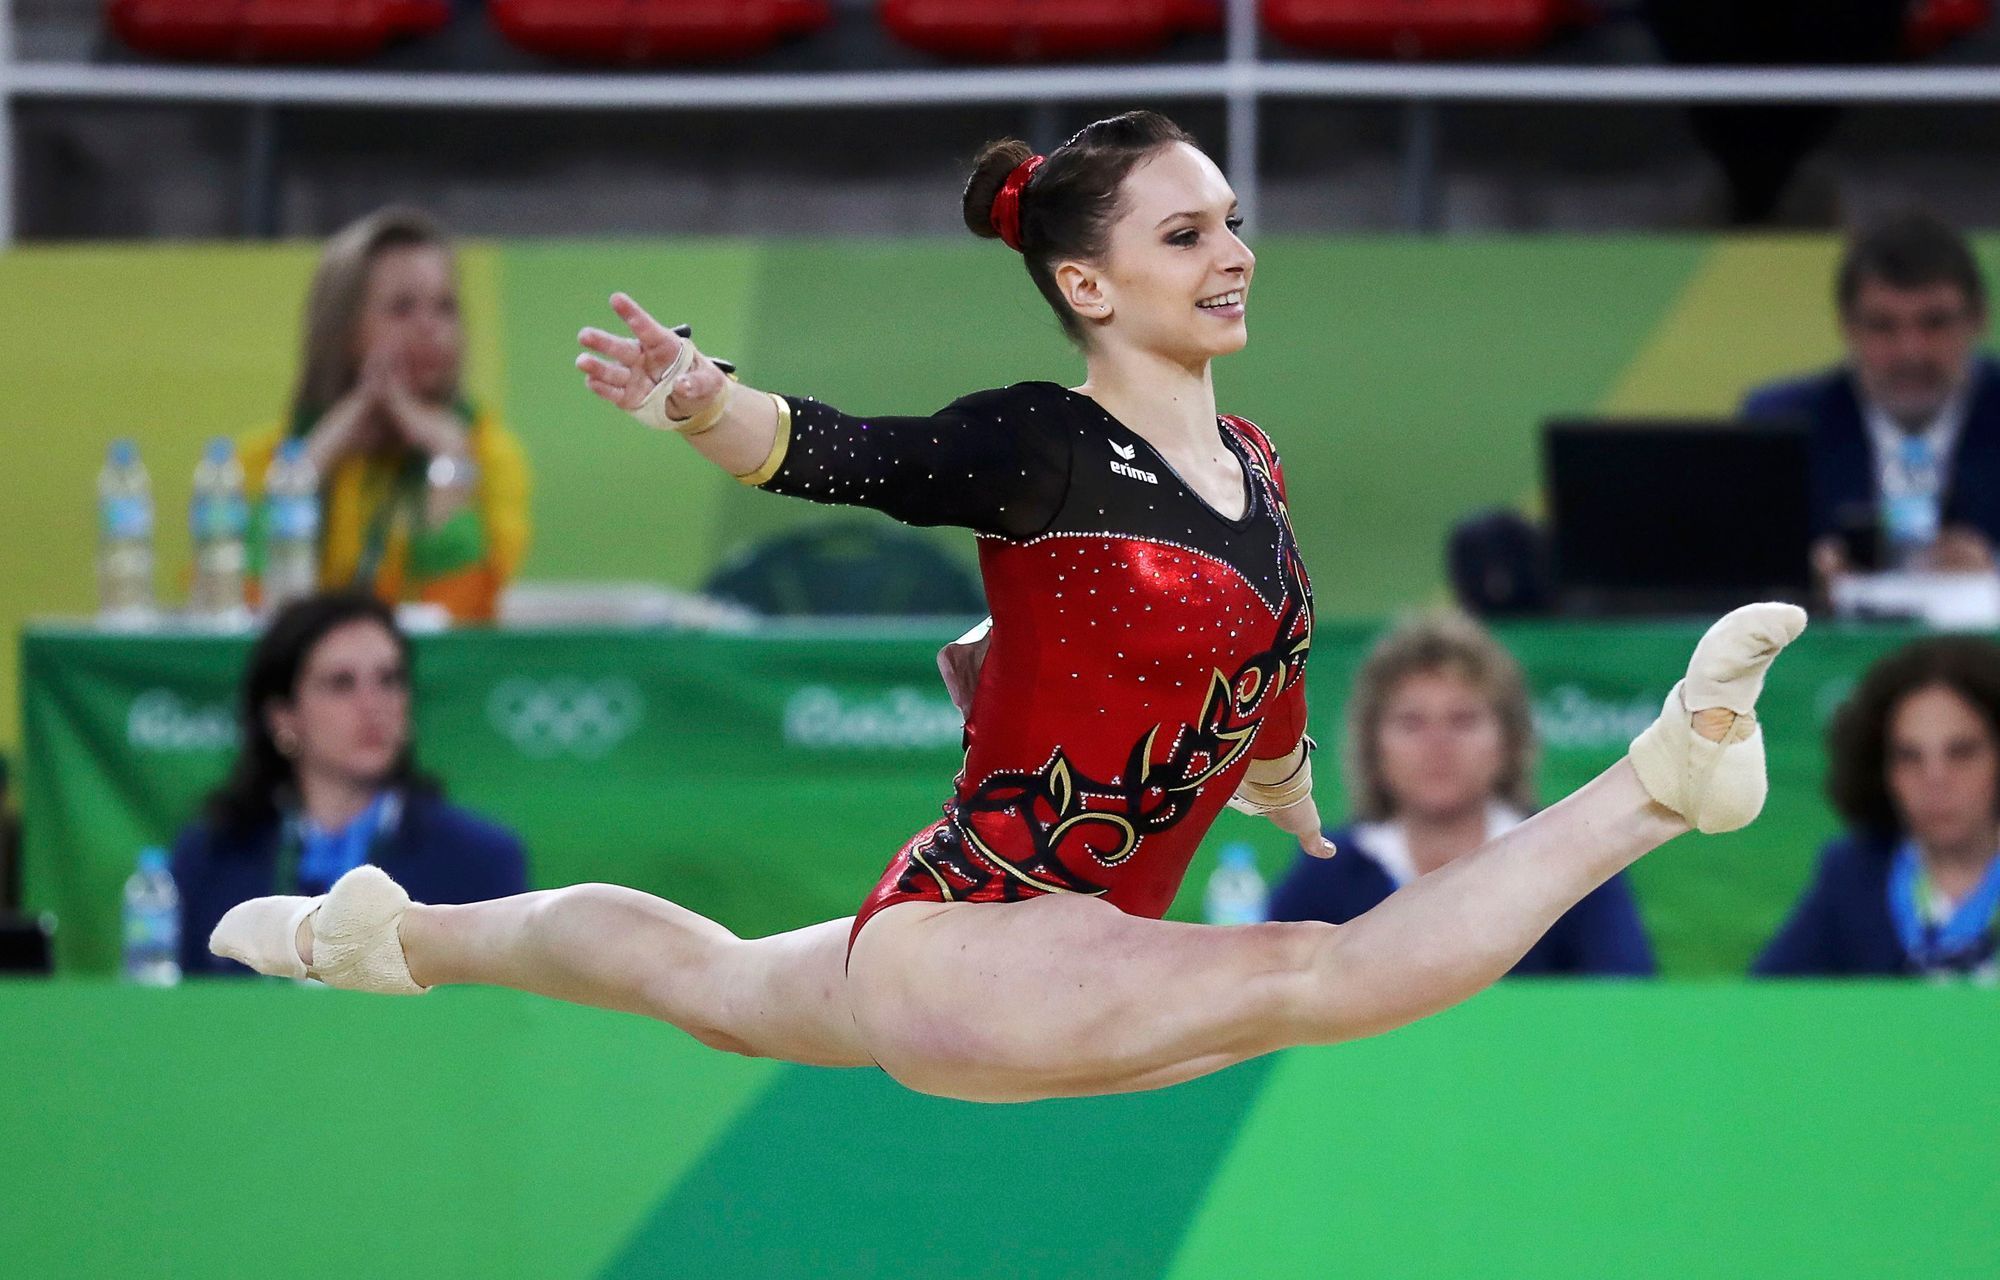 OH 2016, sportovní gymnastika: Sophie Schederová, Německo